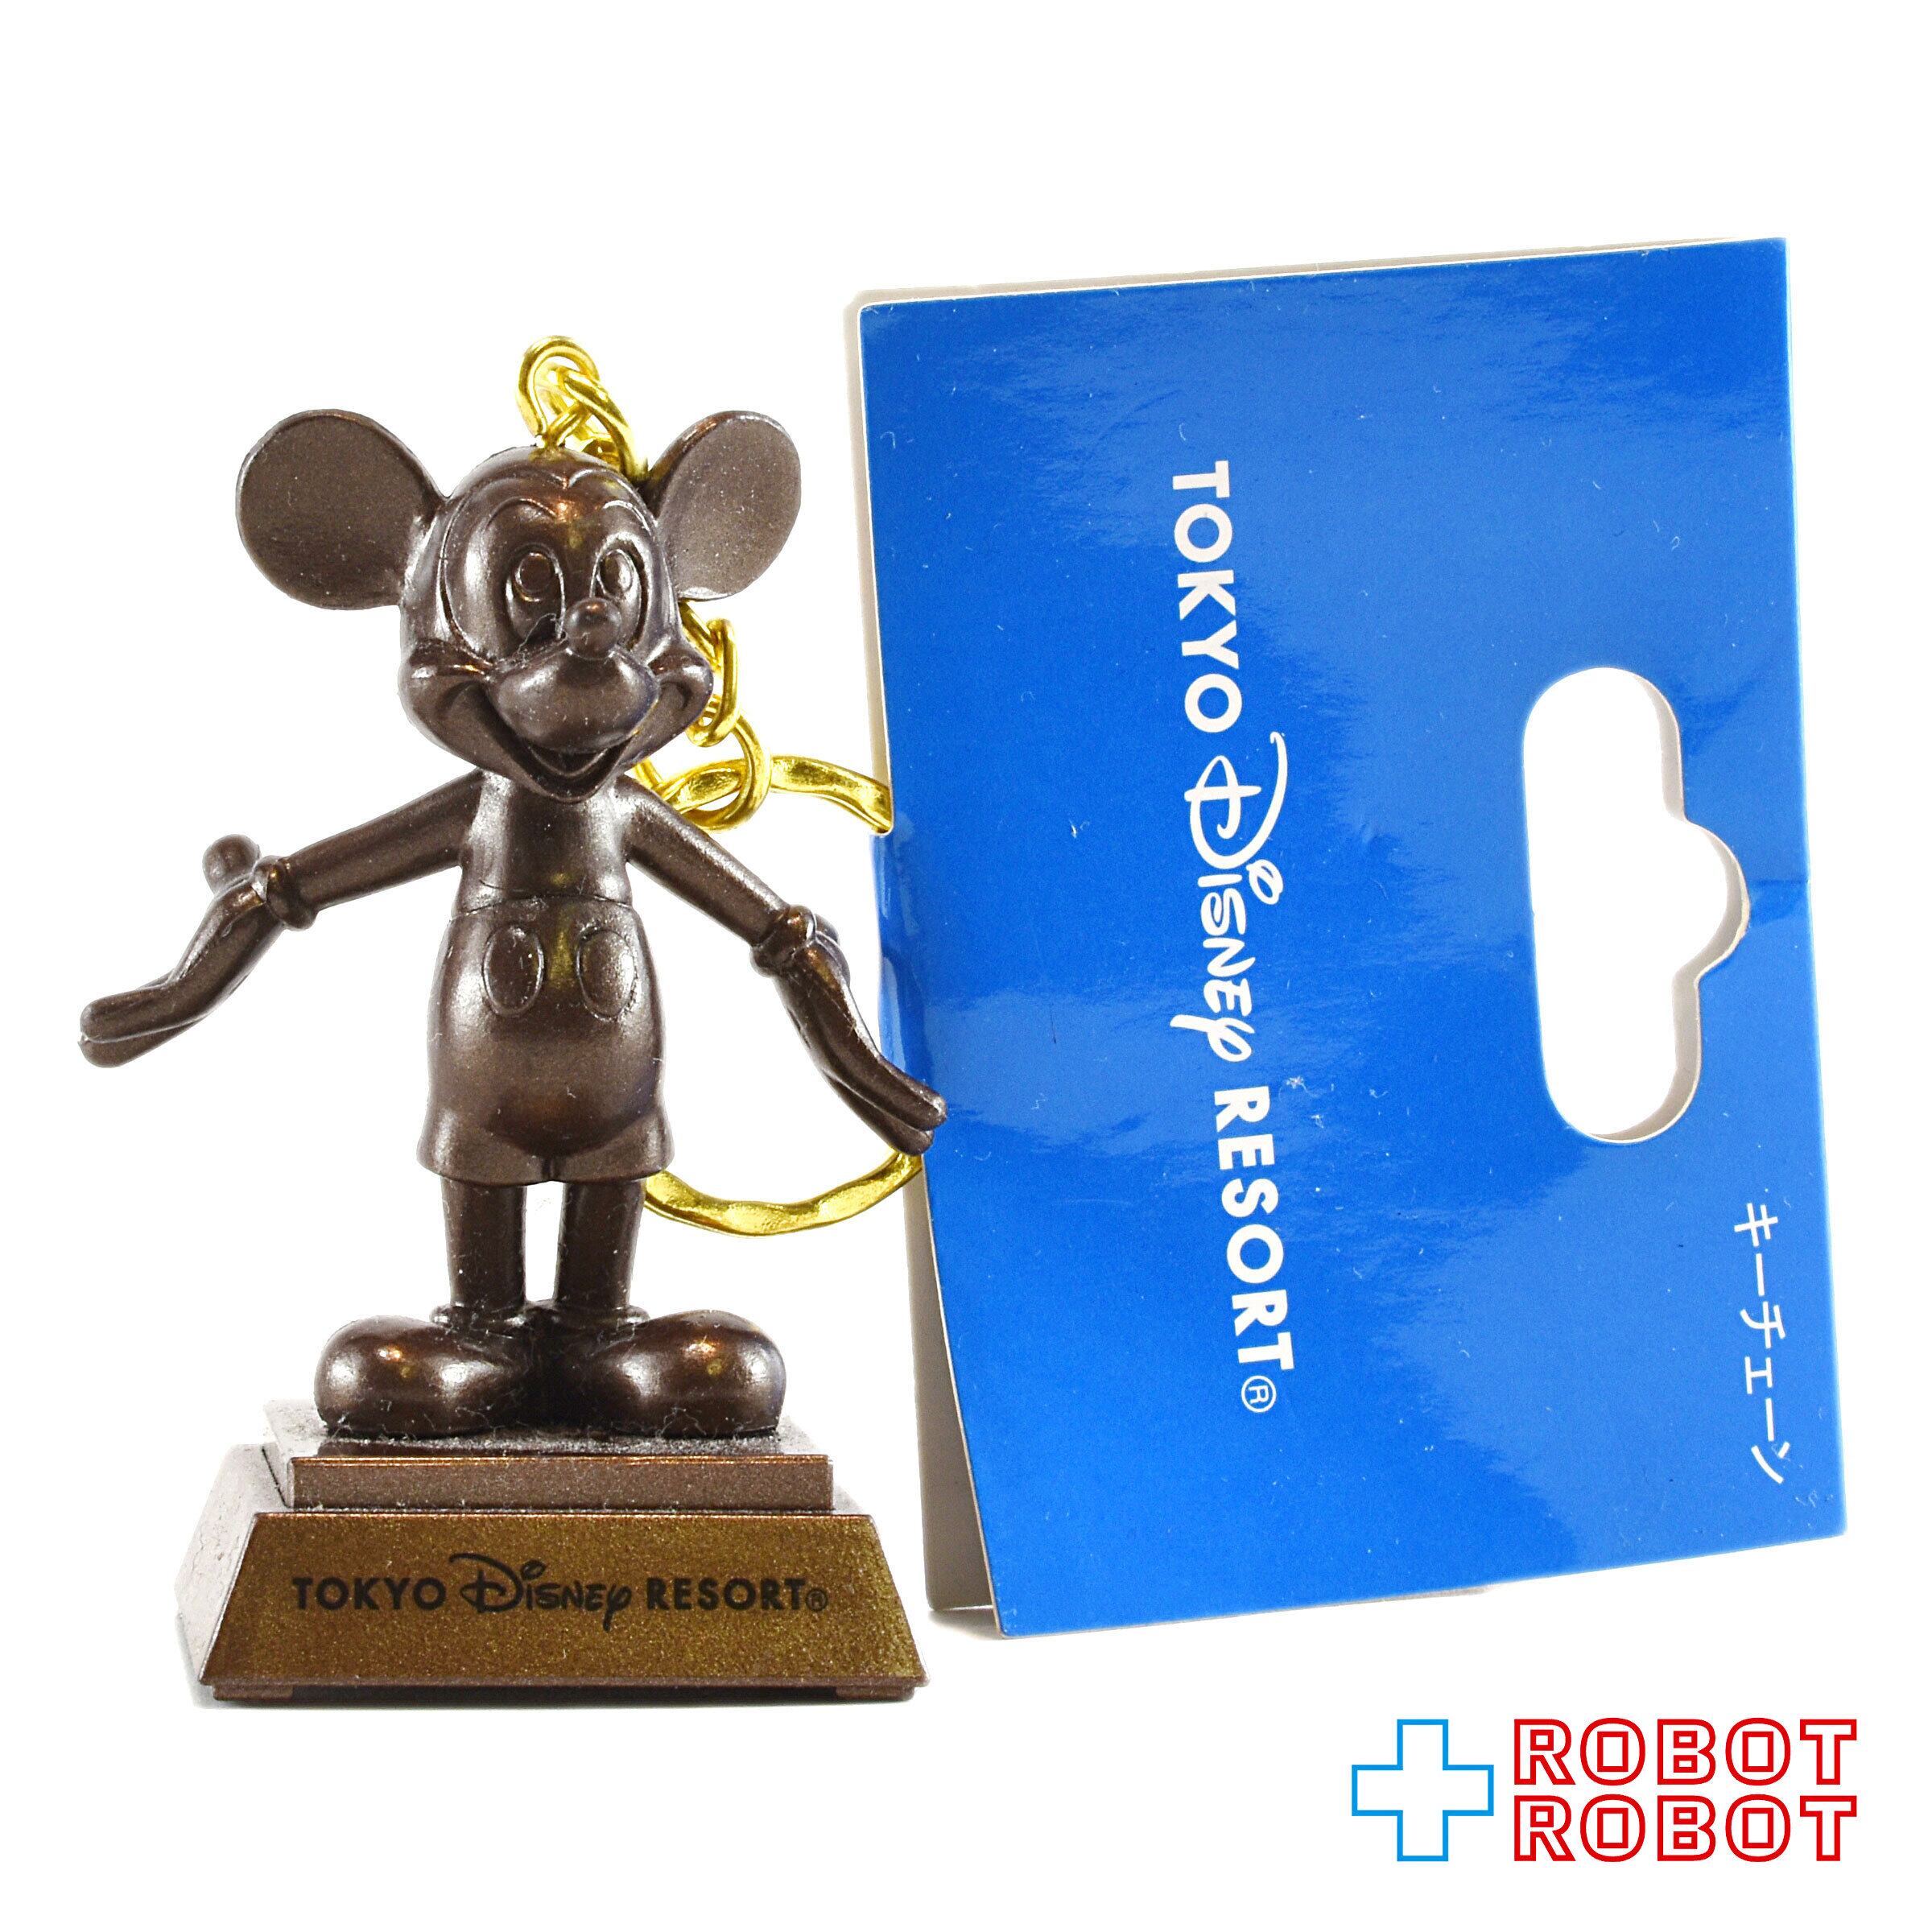 ミッキー 巨大ブロンズ像 ディズニー 1000体限定 銅像 ミッキーマウス 